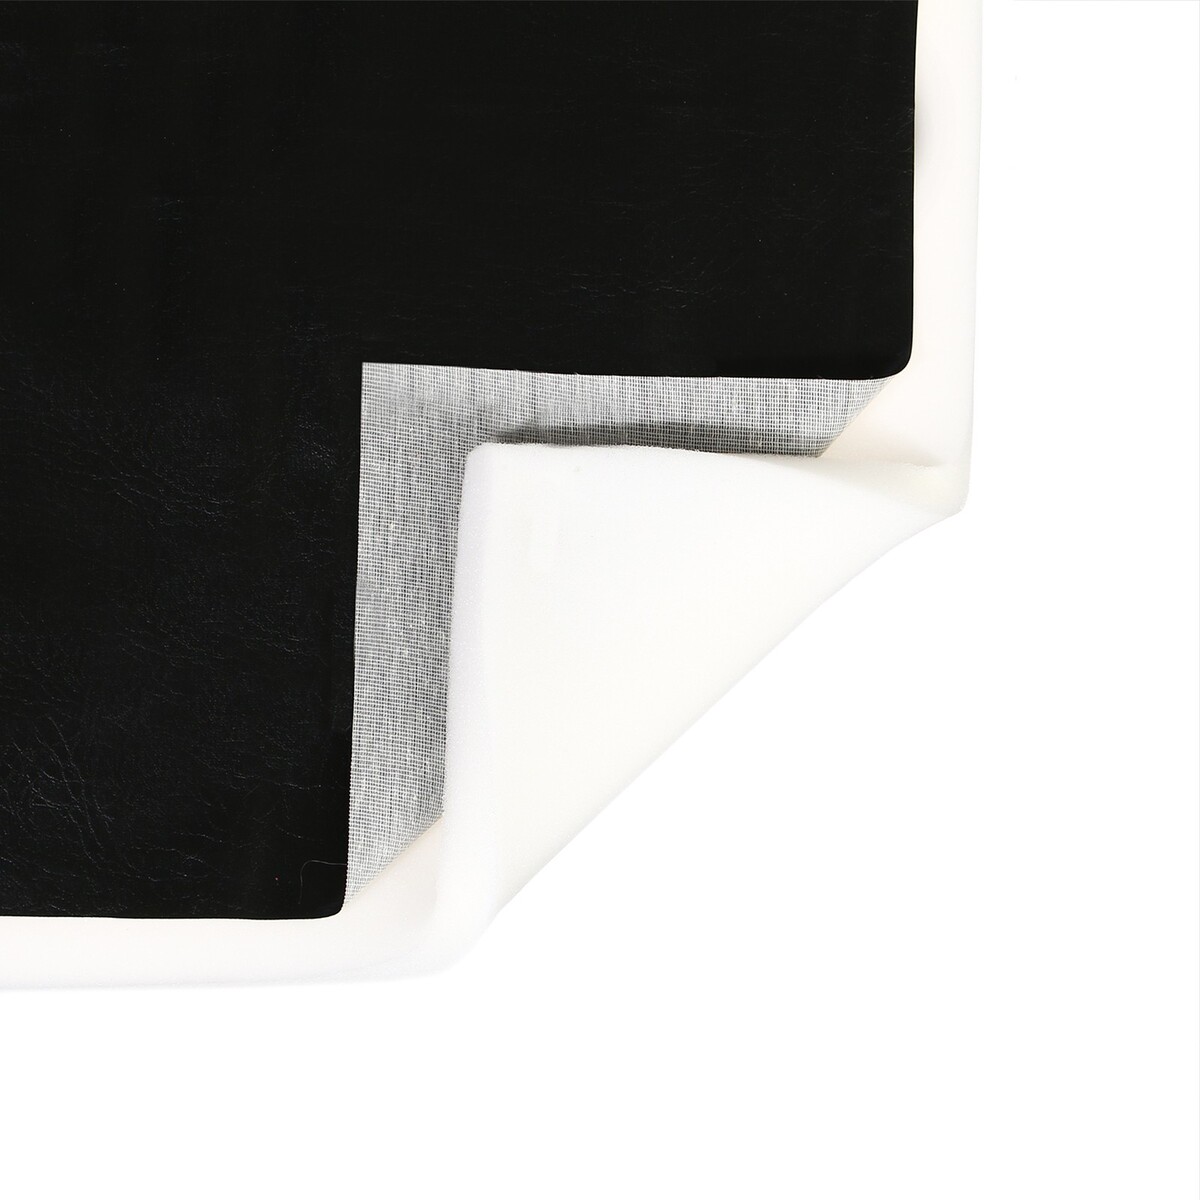 Комплект для перетяжки мебели, 50 × 50 см: иск.кожа, поролон 20 мм, черный комплект для перетяжки мебели 50 × 50 см иск кожа поролон 20 мм чёрный